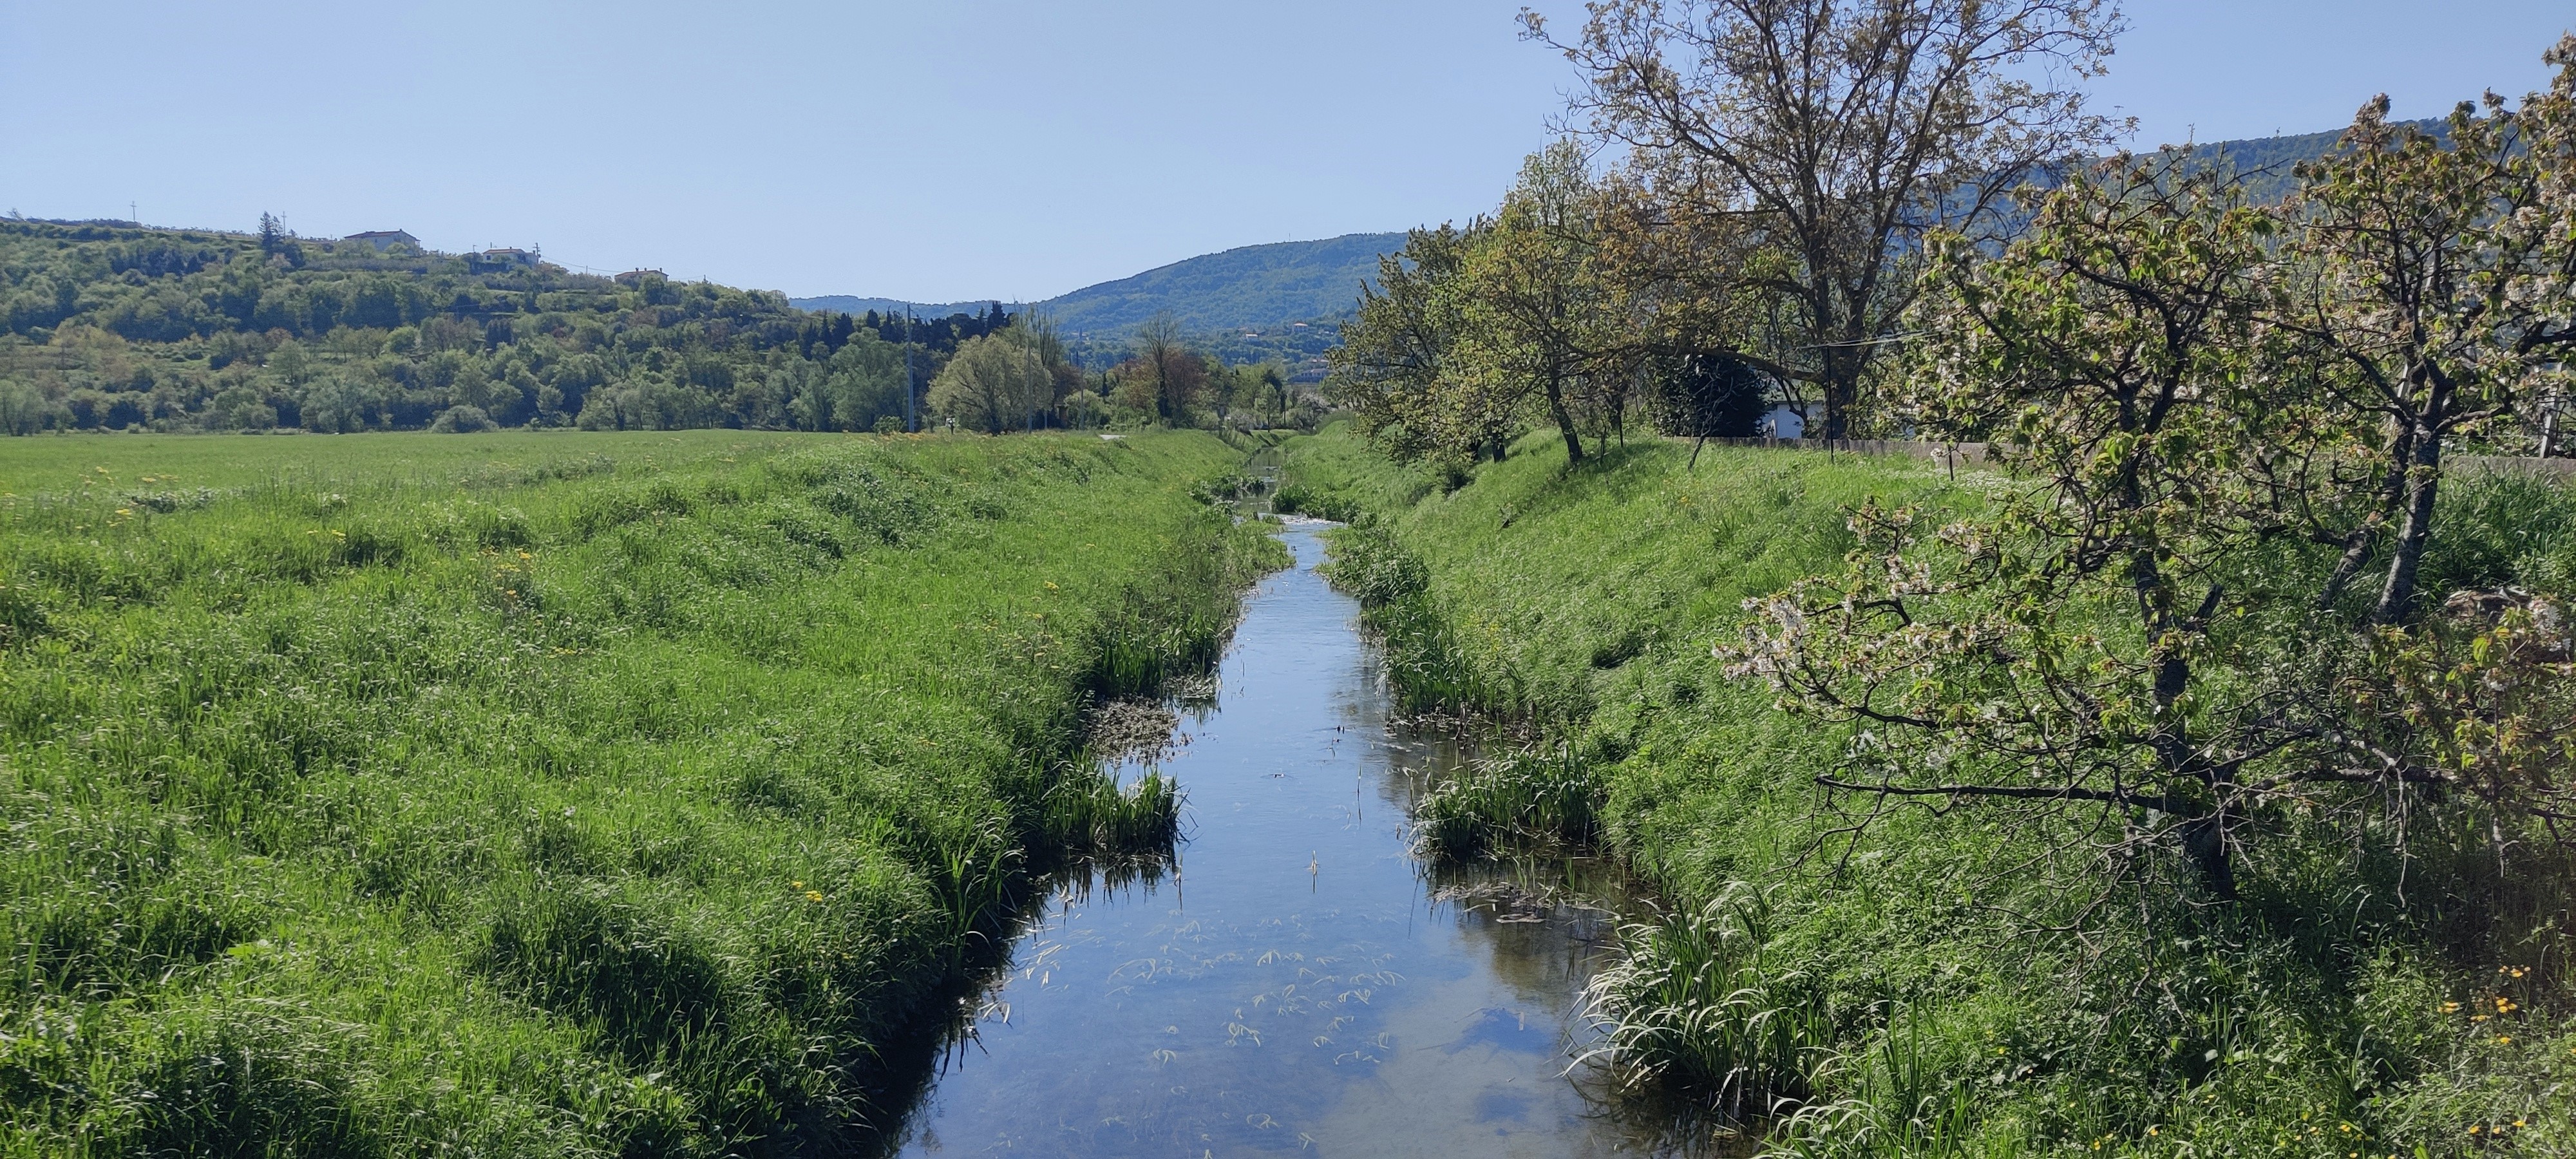 Projekt Zmanjševanje poplavne ogroženosti - Izboljšanje poplavnih razmer na povodju Badaševice (Foto: povodje Badaševice)